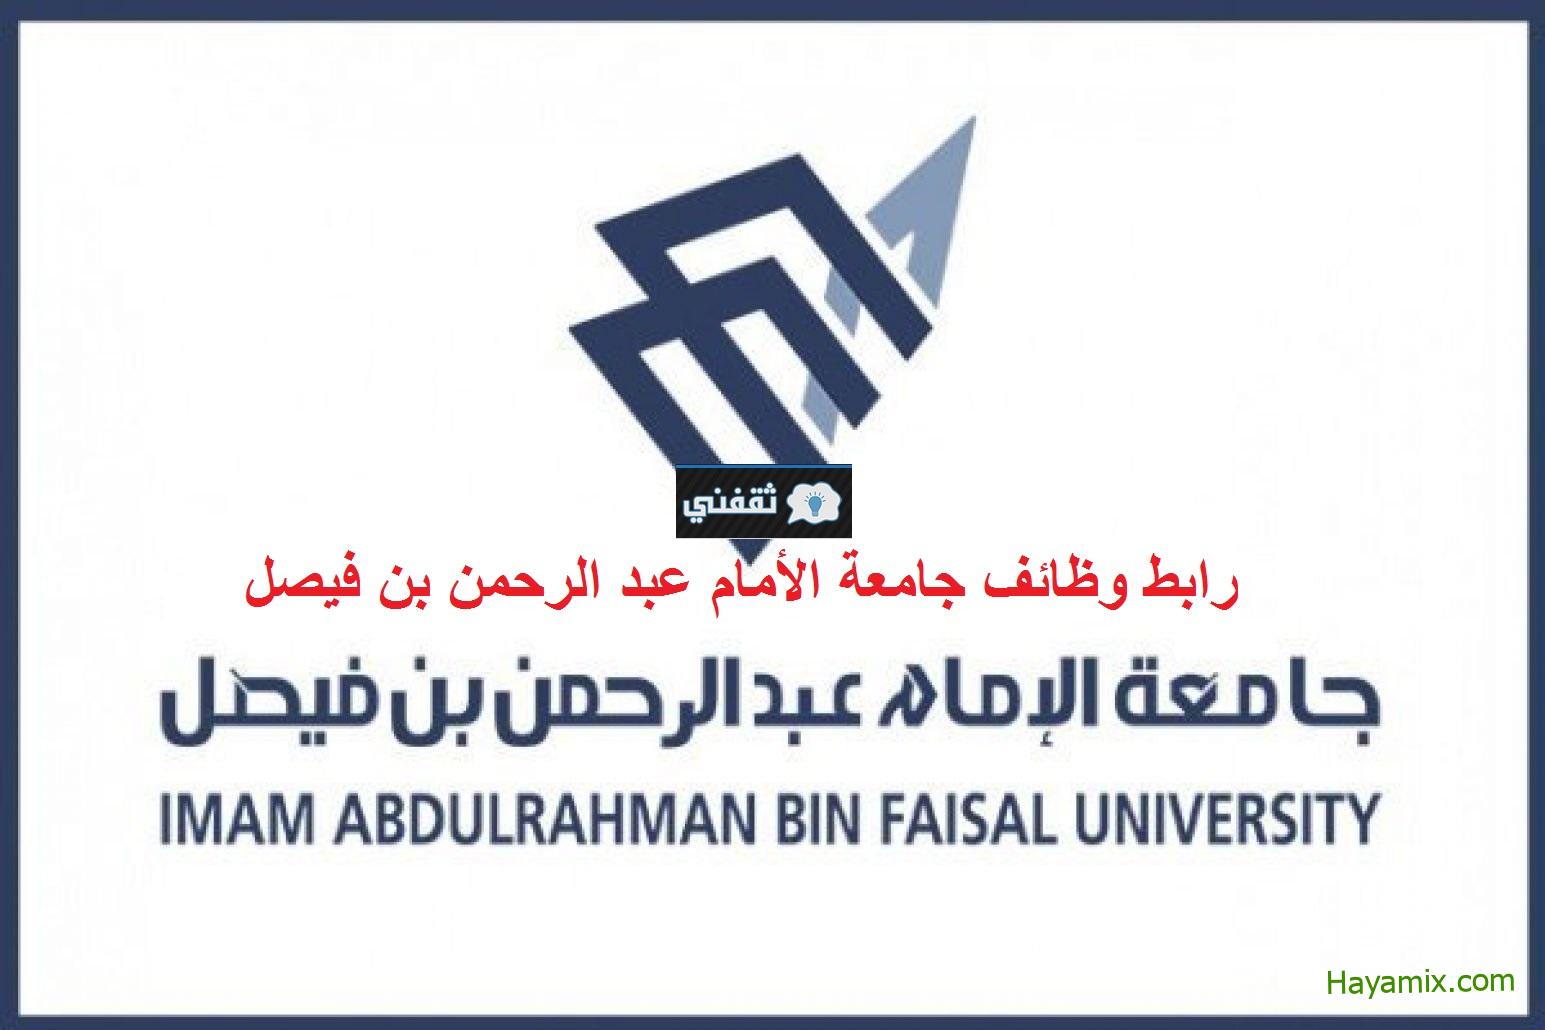 التقديم على وظائف جامعة الإمام عبدالرحمن بن فيصل 1444 للرجال والنساء